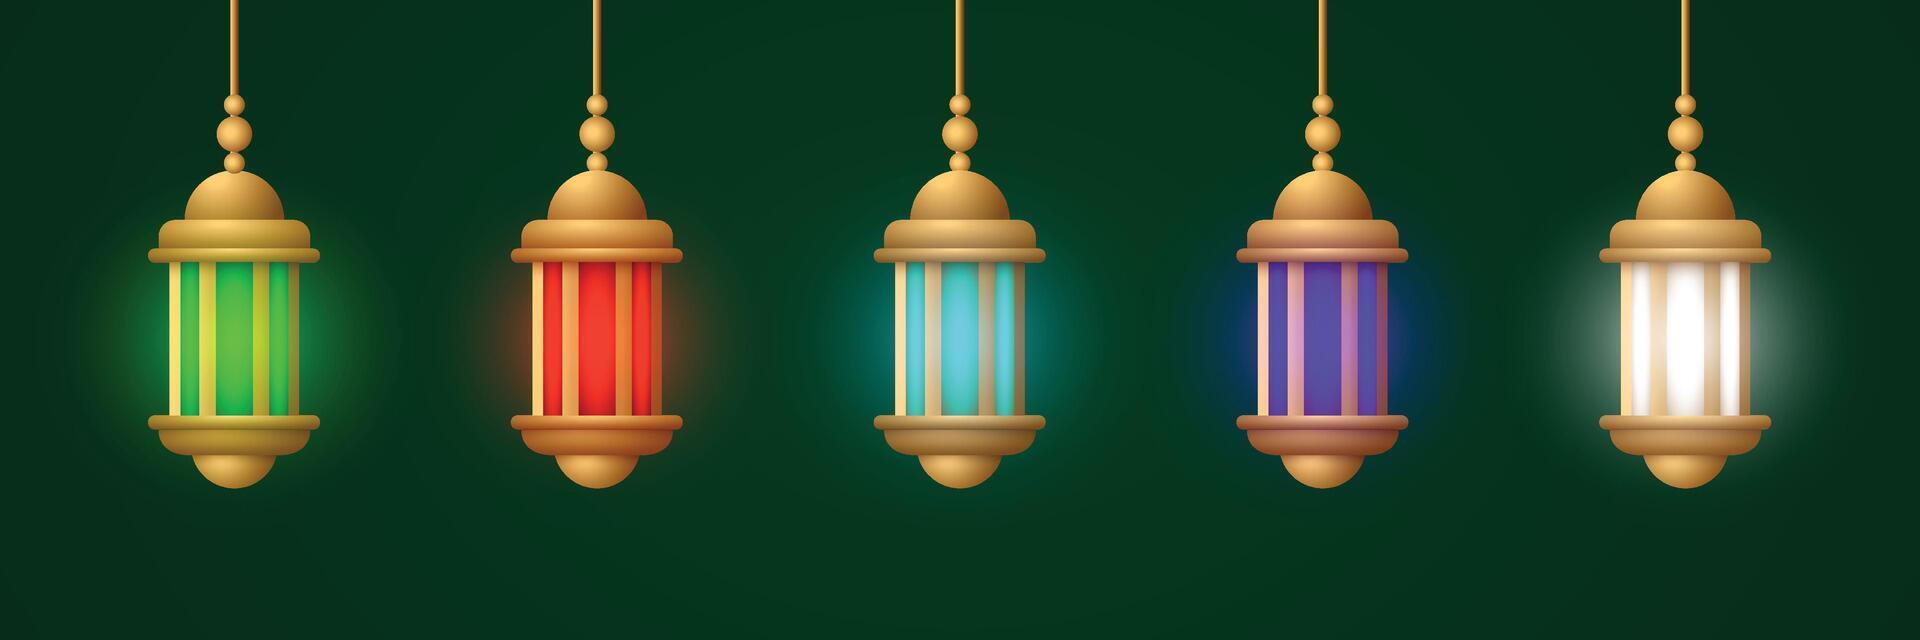 realistisch lantaarn ornament reeks verzameling vector ontwerp